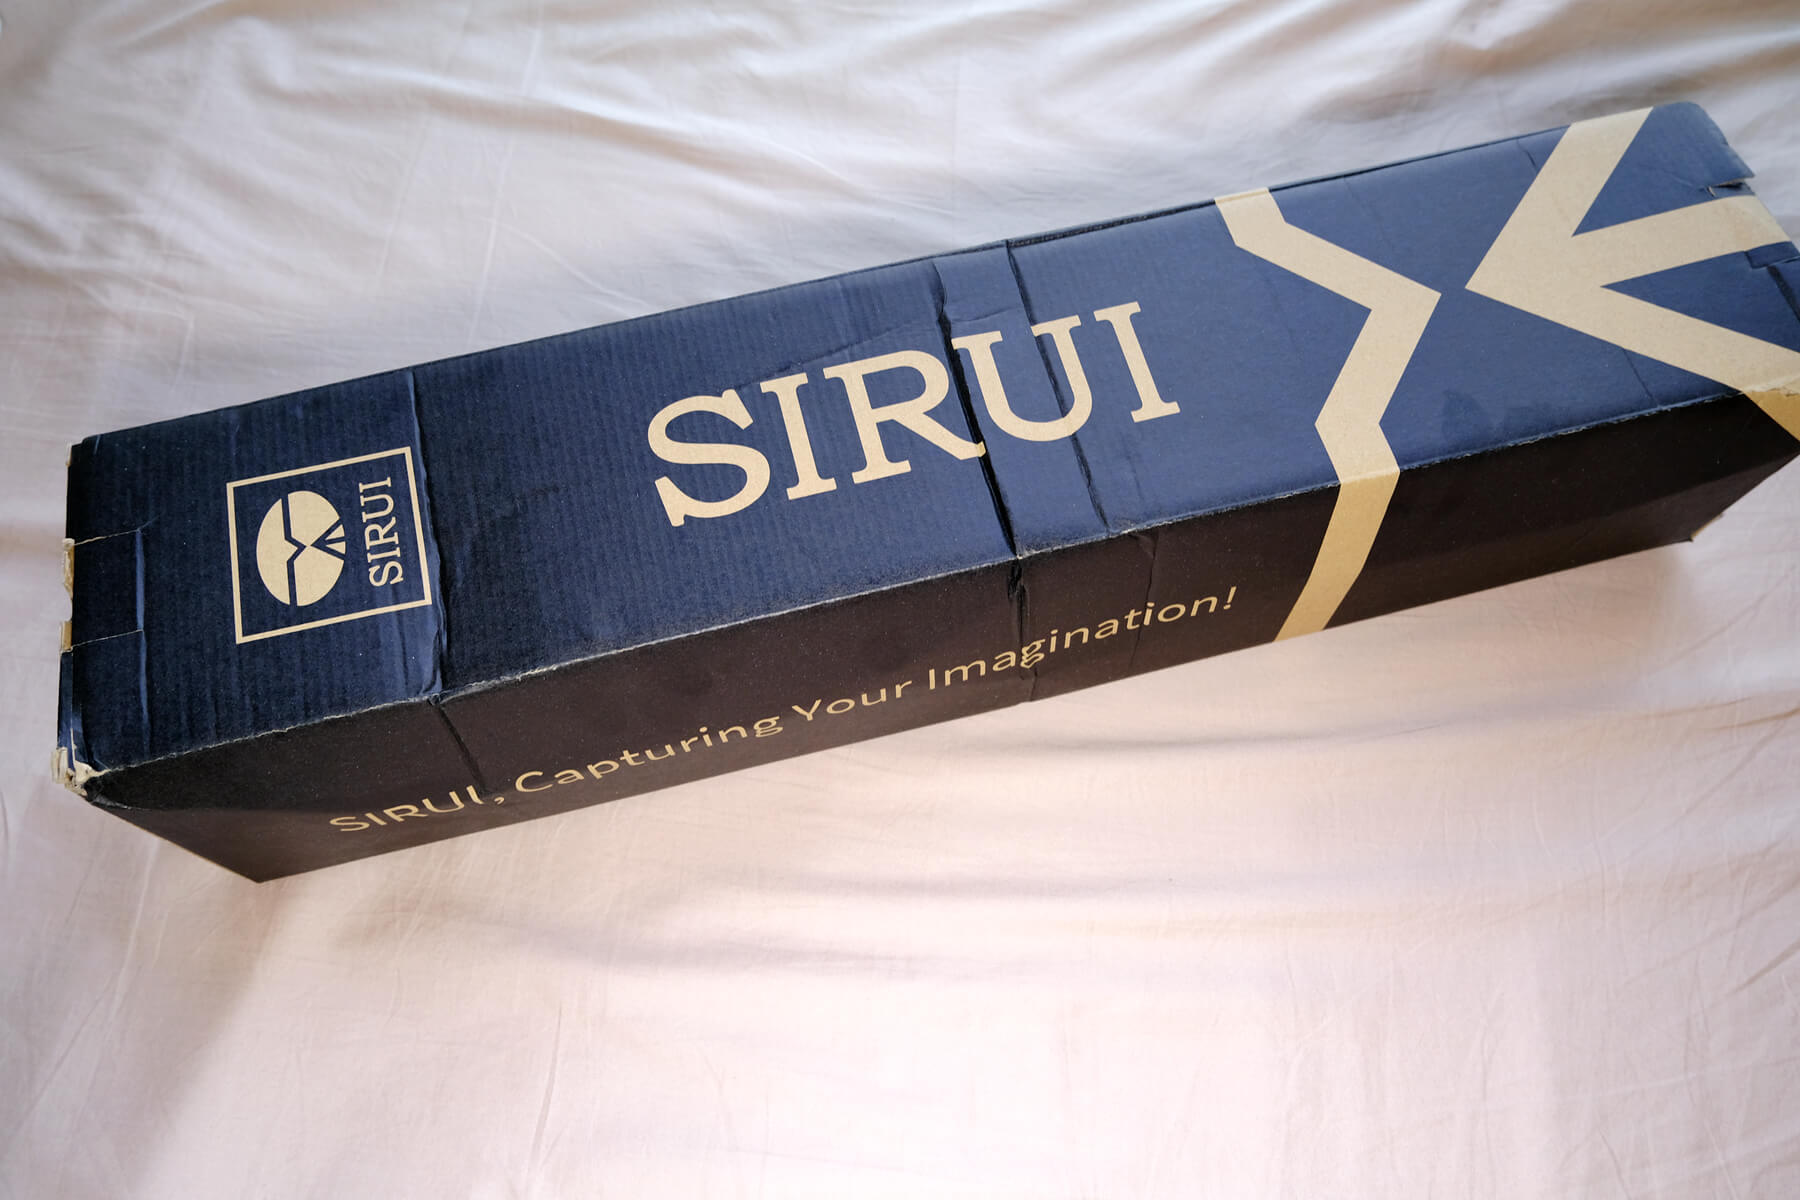 SIRUI ST-124 tripod box